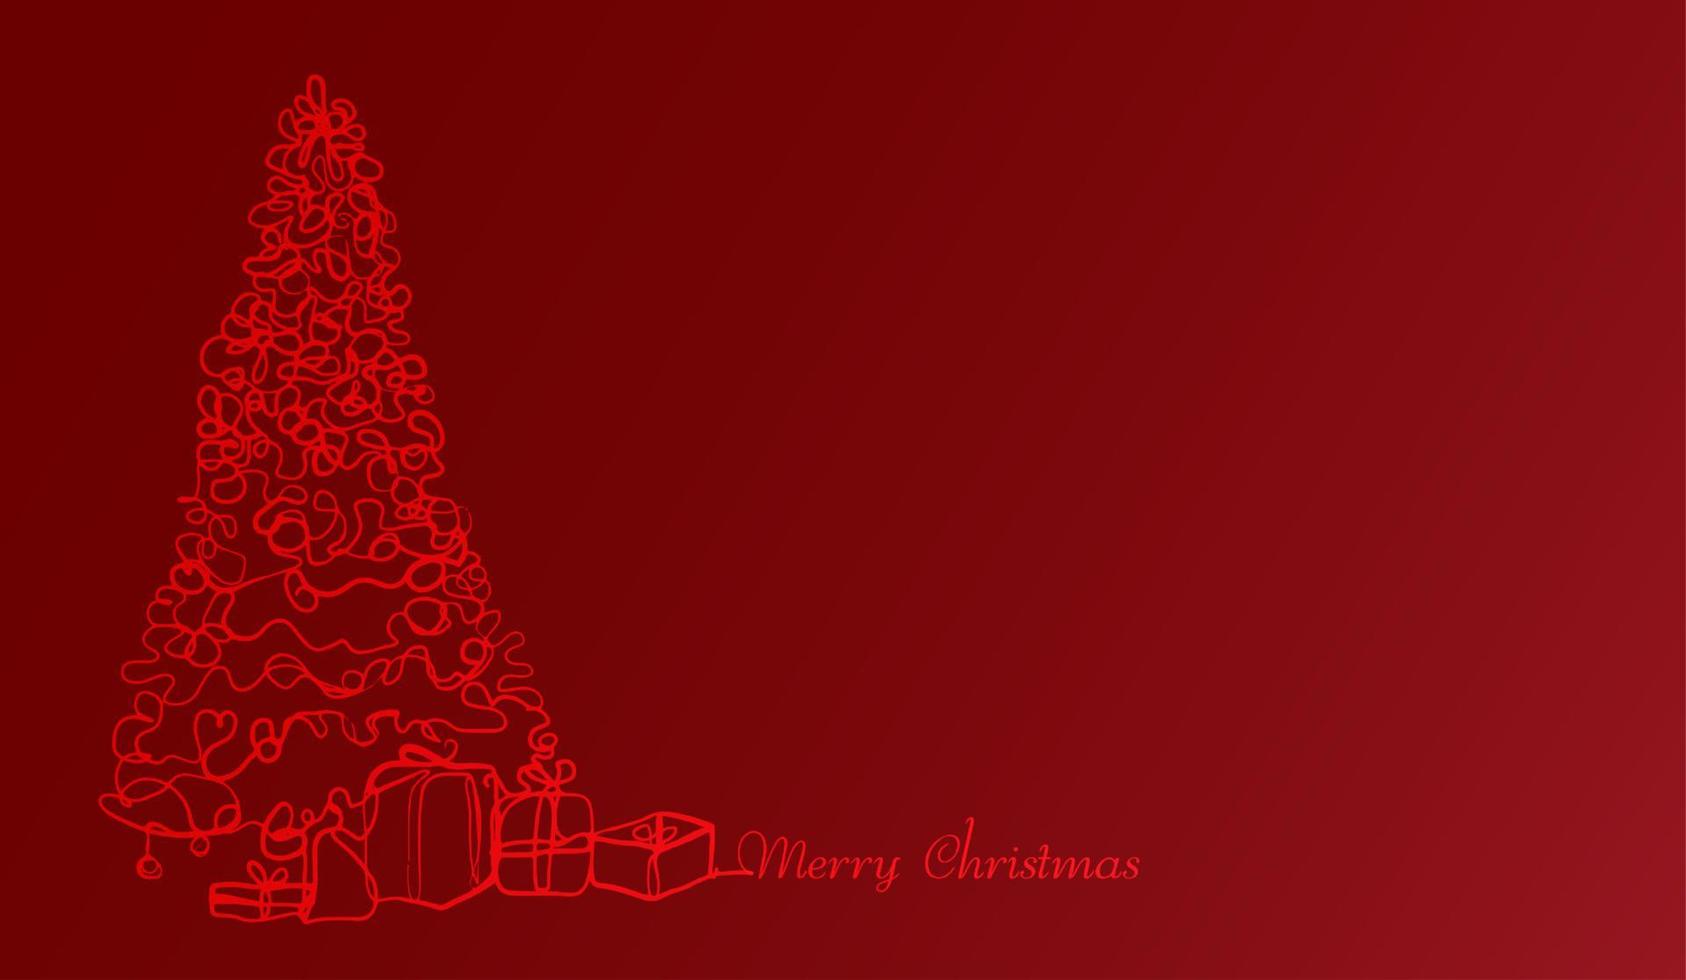 julgran och presenter eller presentförpackning. kontinuerlig linje god jul ritning på röd bakgrund. vektor design